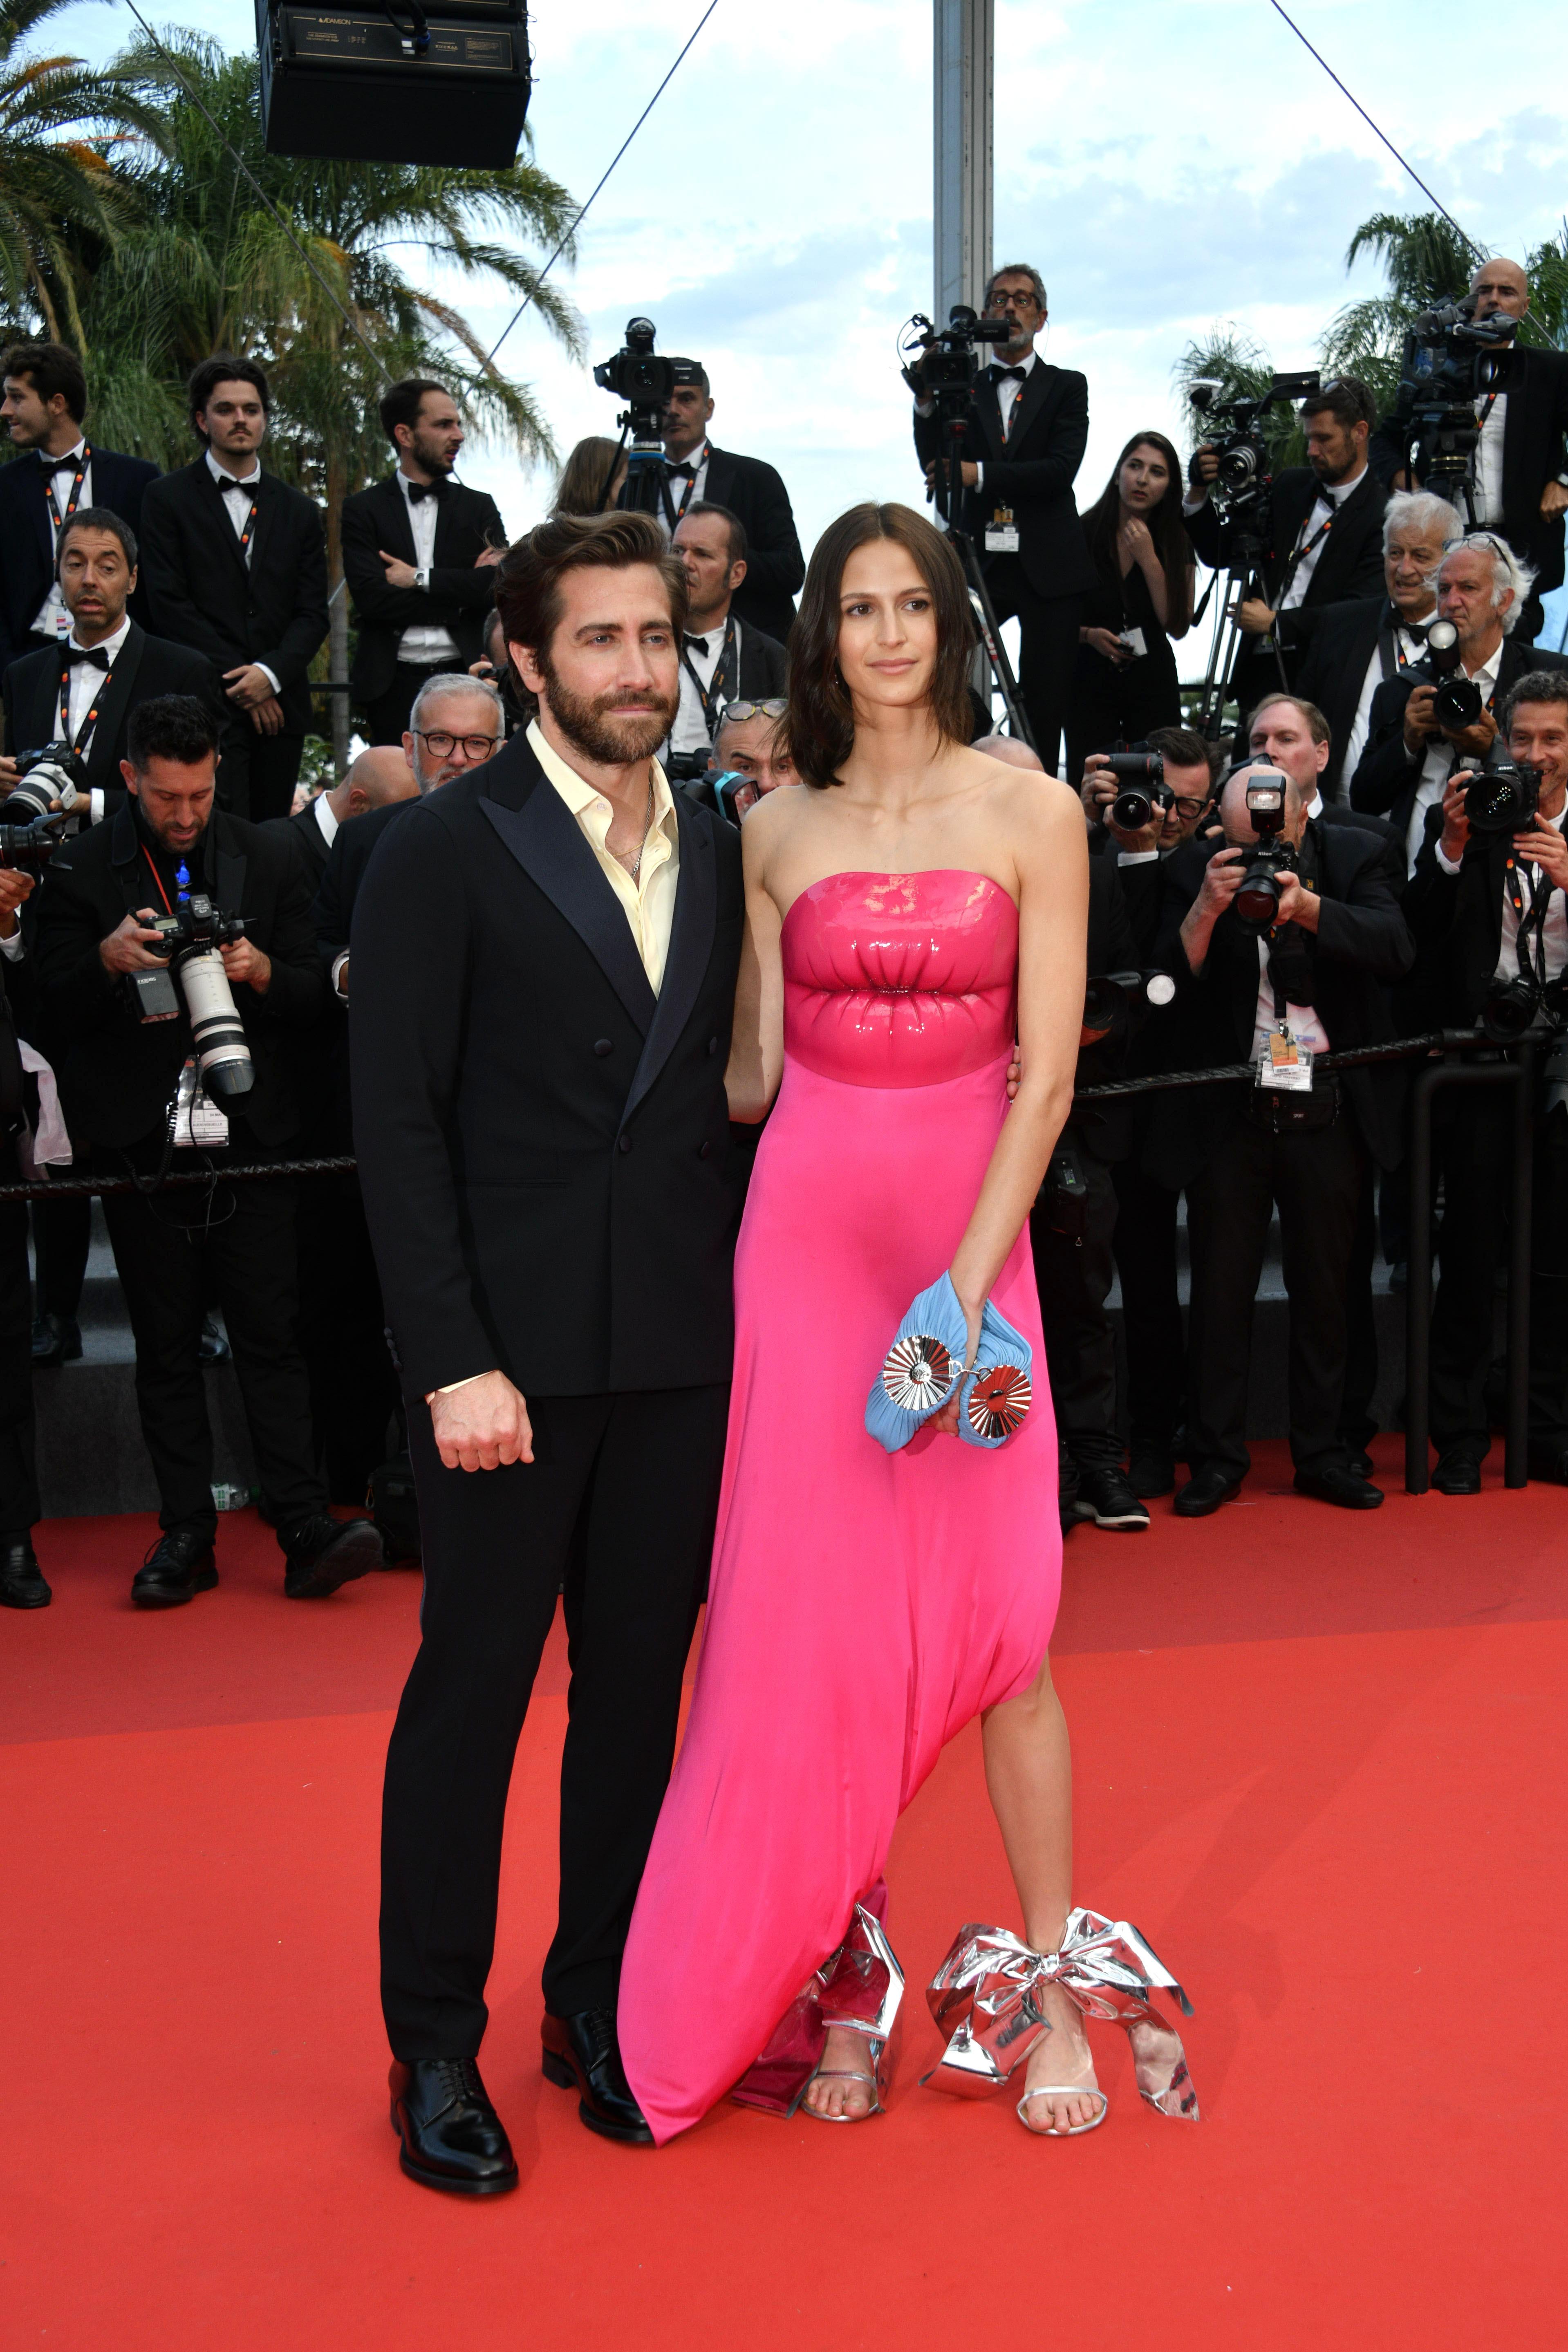 KNÆSJ: Jeanne Cadieu kom sammen med kjæresten Jake Gyllenhaal. Hun var kledd i en knallrosa kjole med lepper over brystet, signert luksusmerket Loewe. Gyllenhaal viser at slips ikke er en nødvendighet på den røde løperen. 